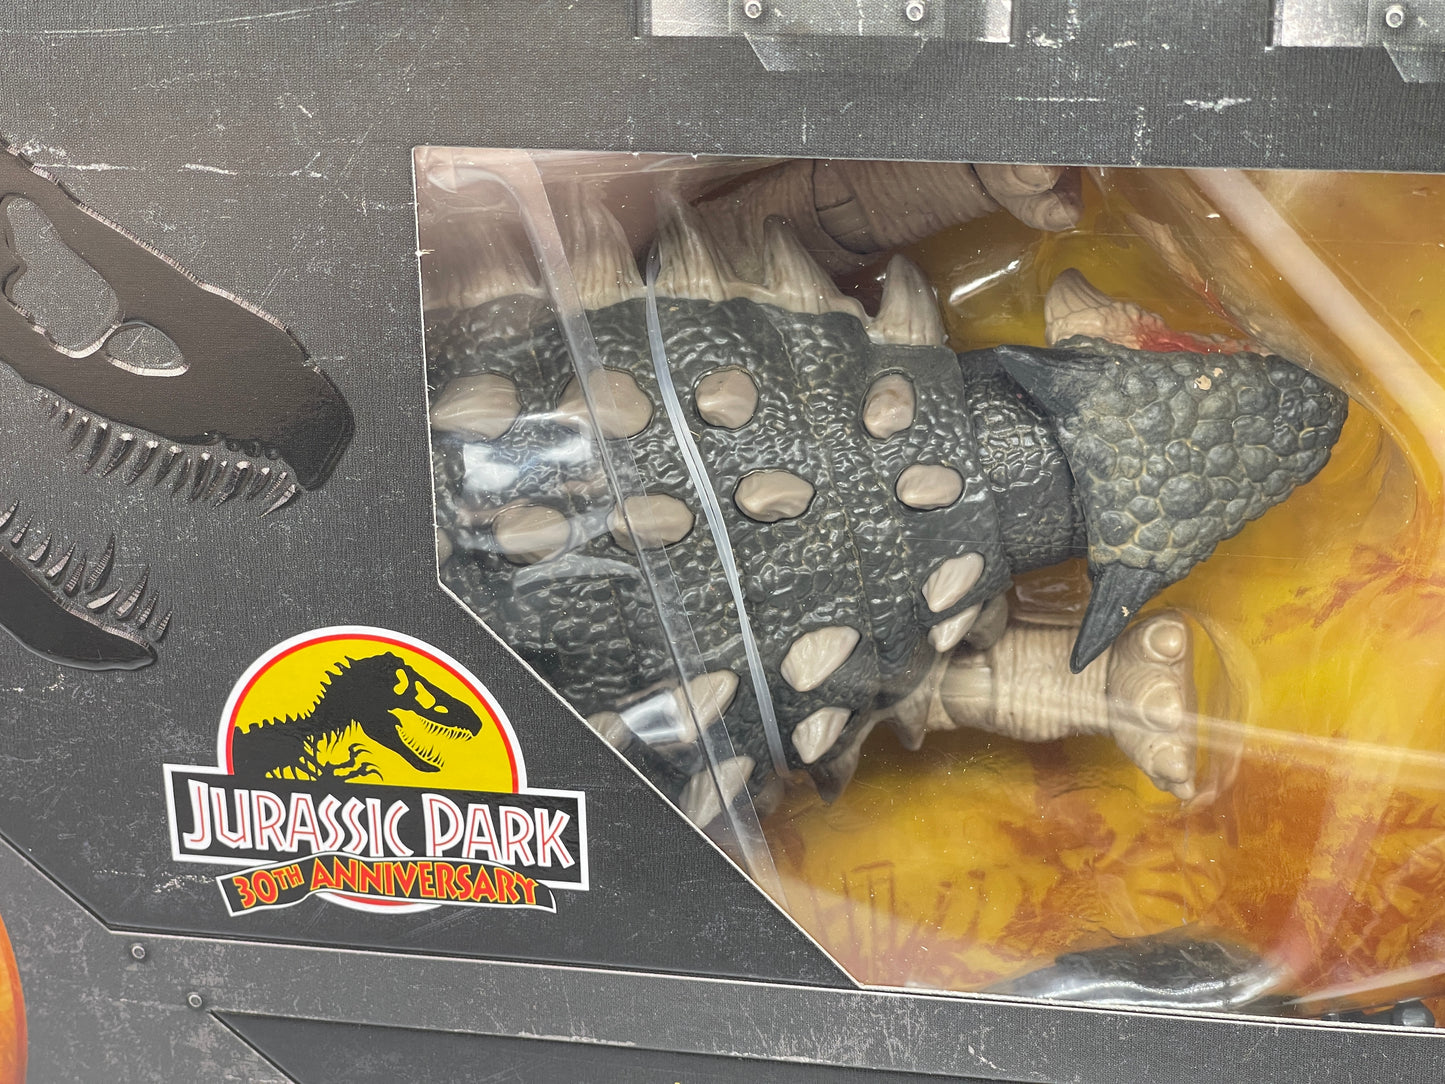 Jurassic Park Hammond Collection "Ankylosaurus" 30th Anniversary HLT25 (2022)